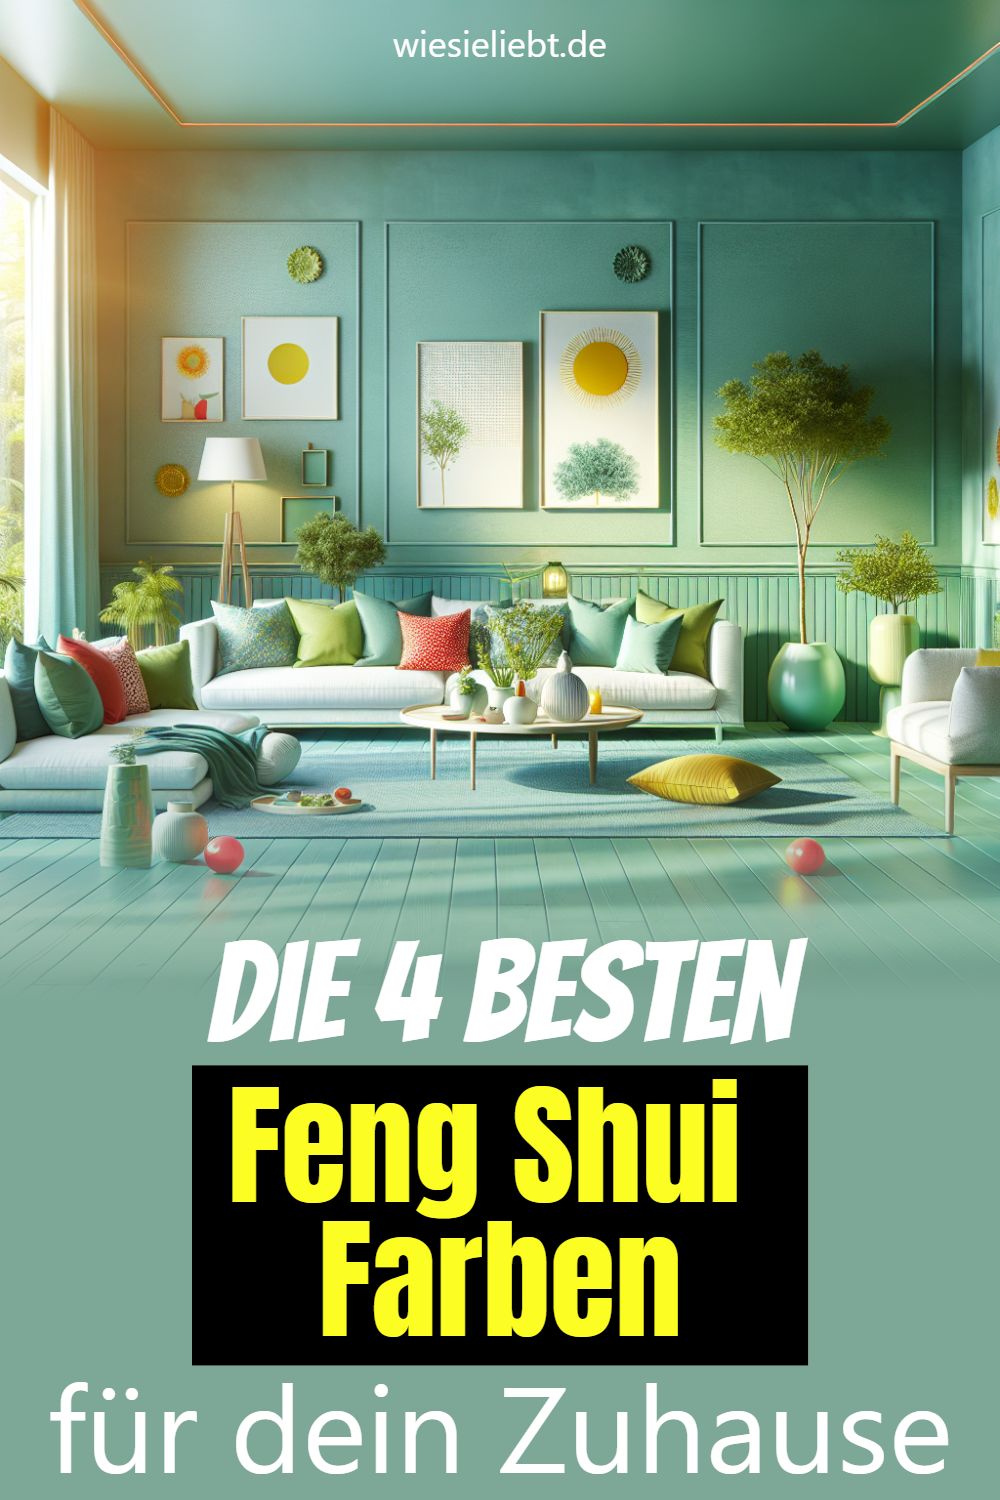 Die 4 besten Feng Shui Farben für dein Zuhause